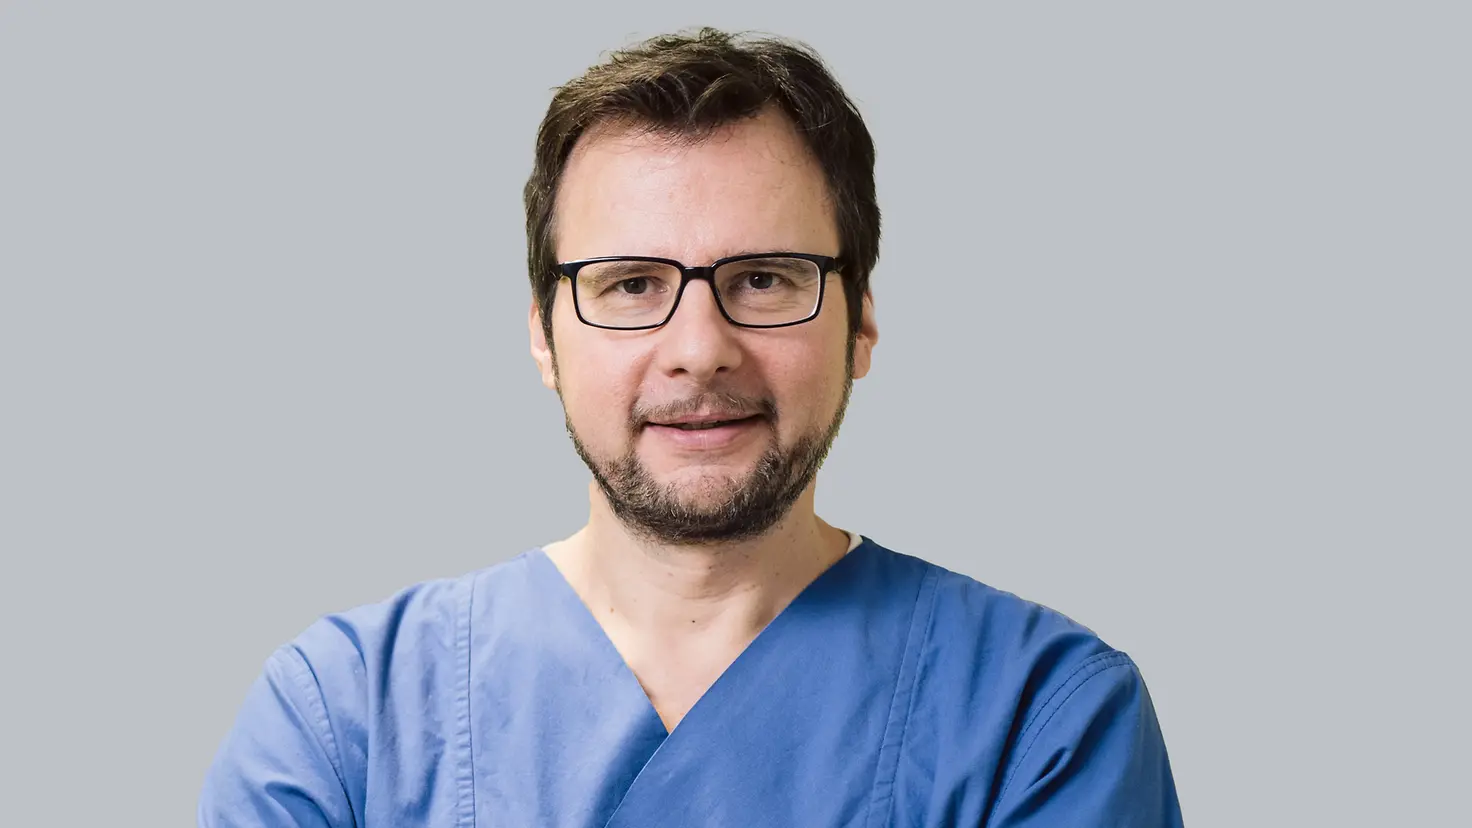 Chefarzt Prof. Dr. med. Harald Dormann am Klinikum Fürth